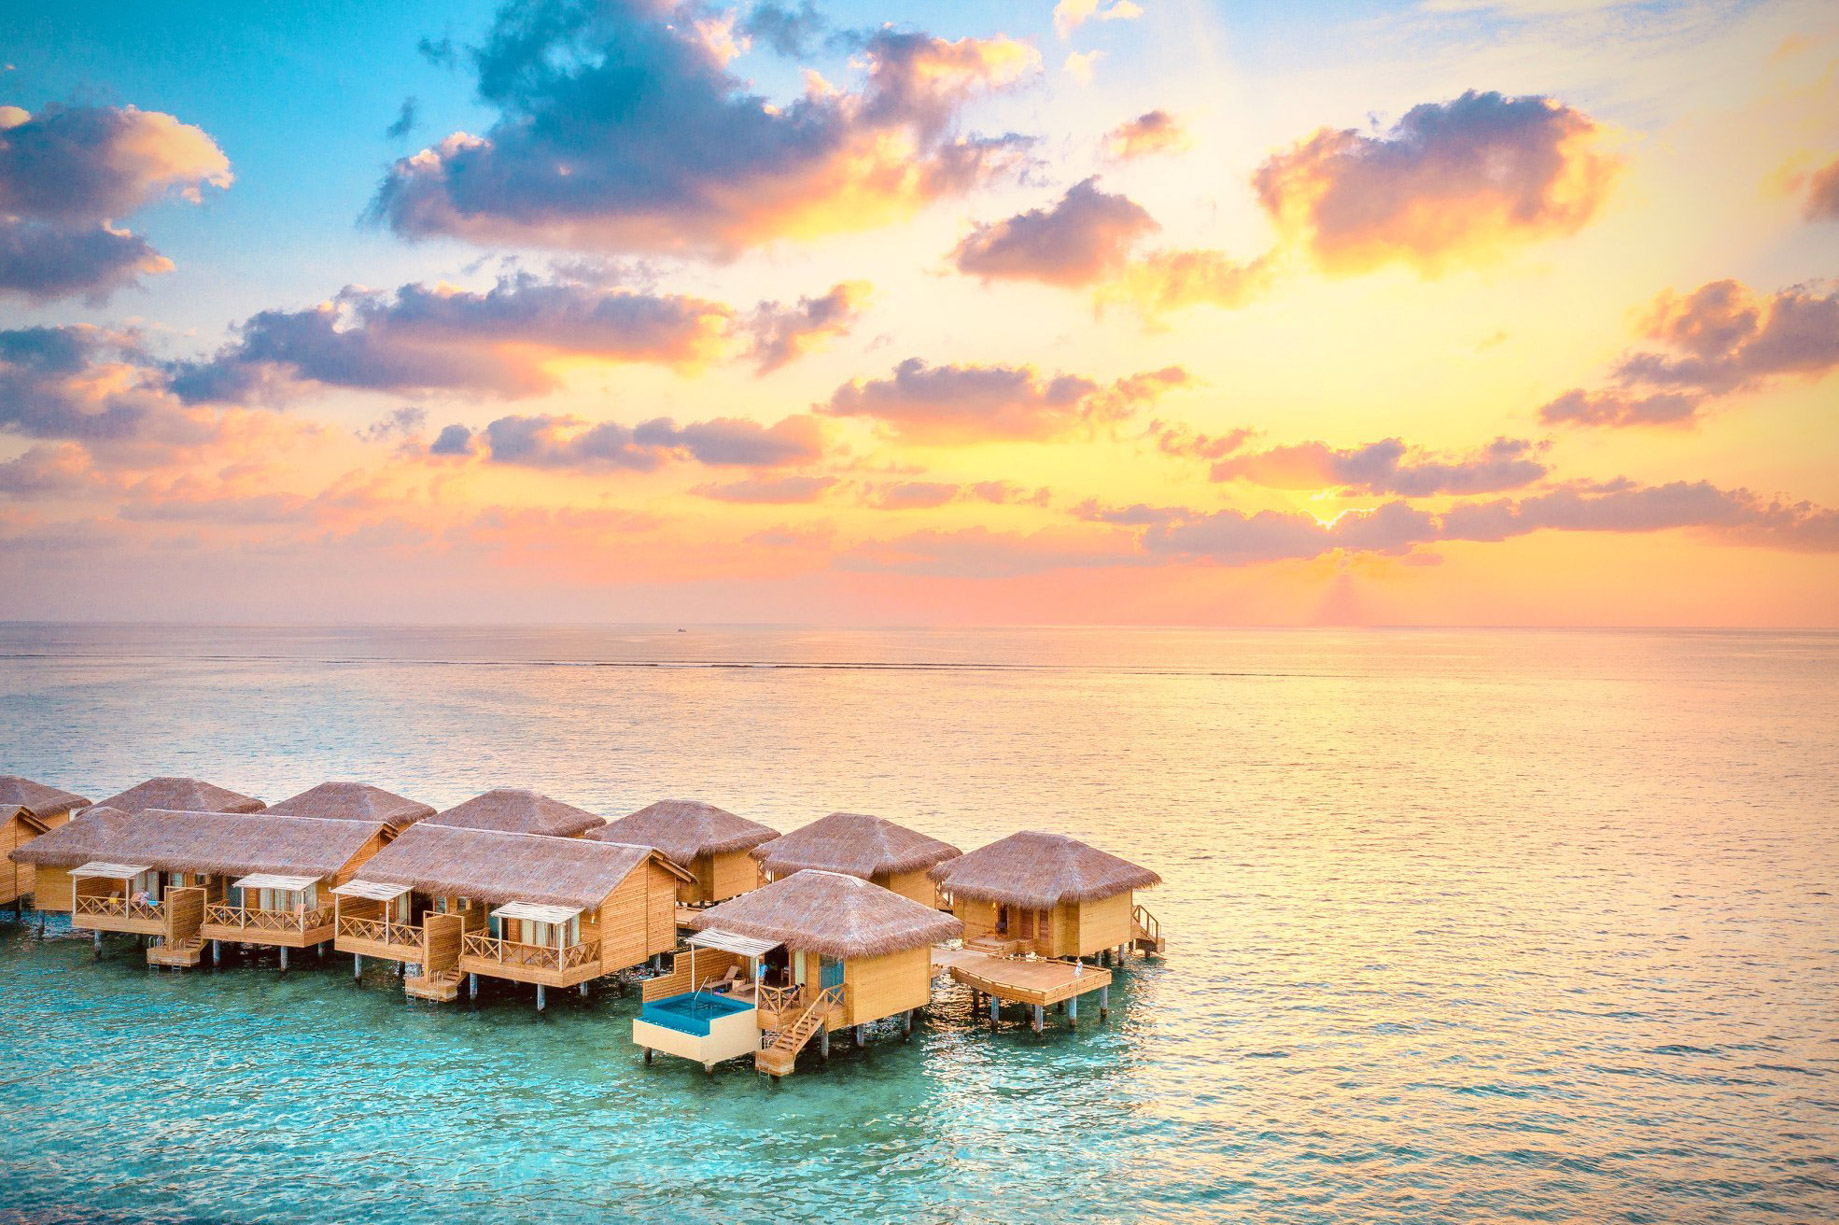 You & Me Maldives Resort – Uthurumaafaru, Raa Atoll, Maldives – Overwater Villa Sunset